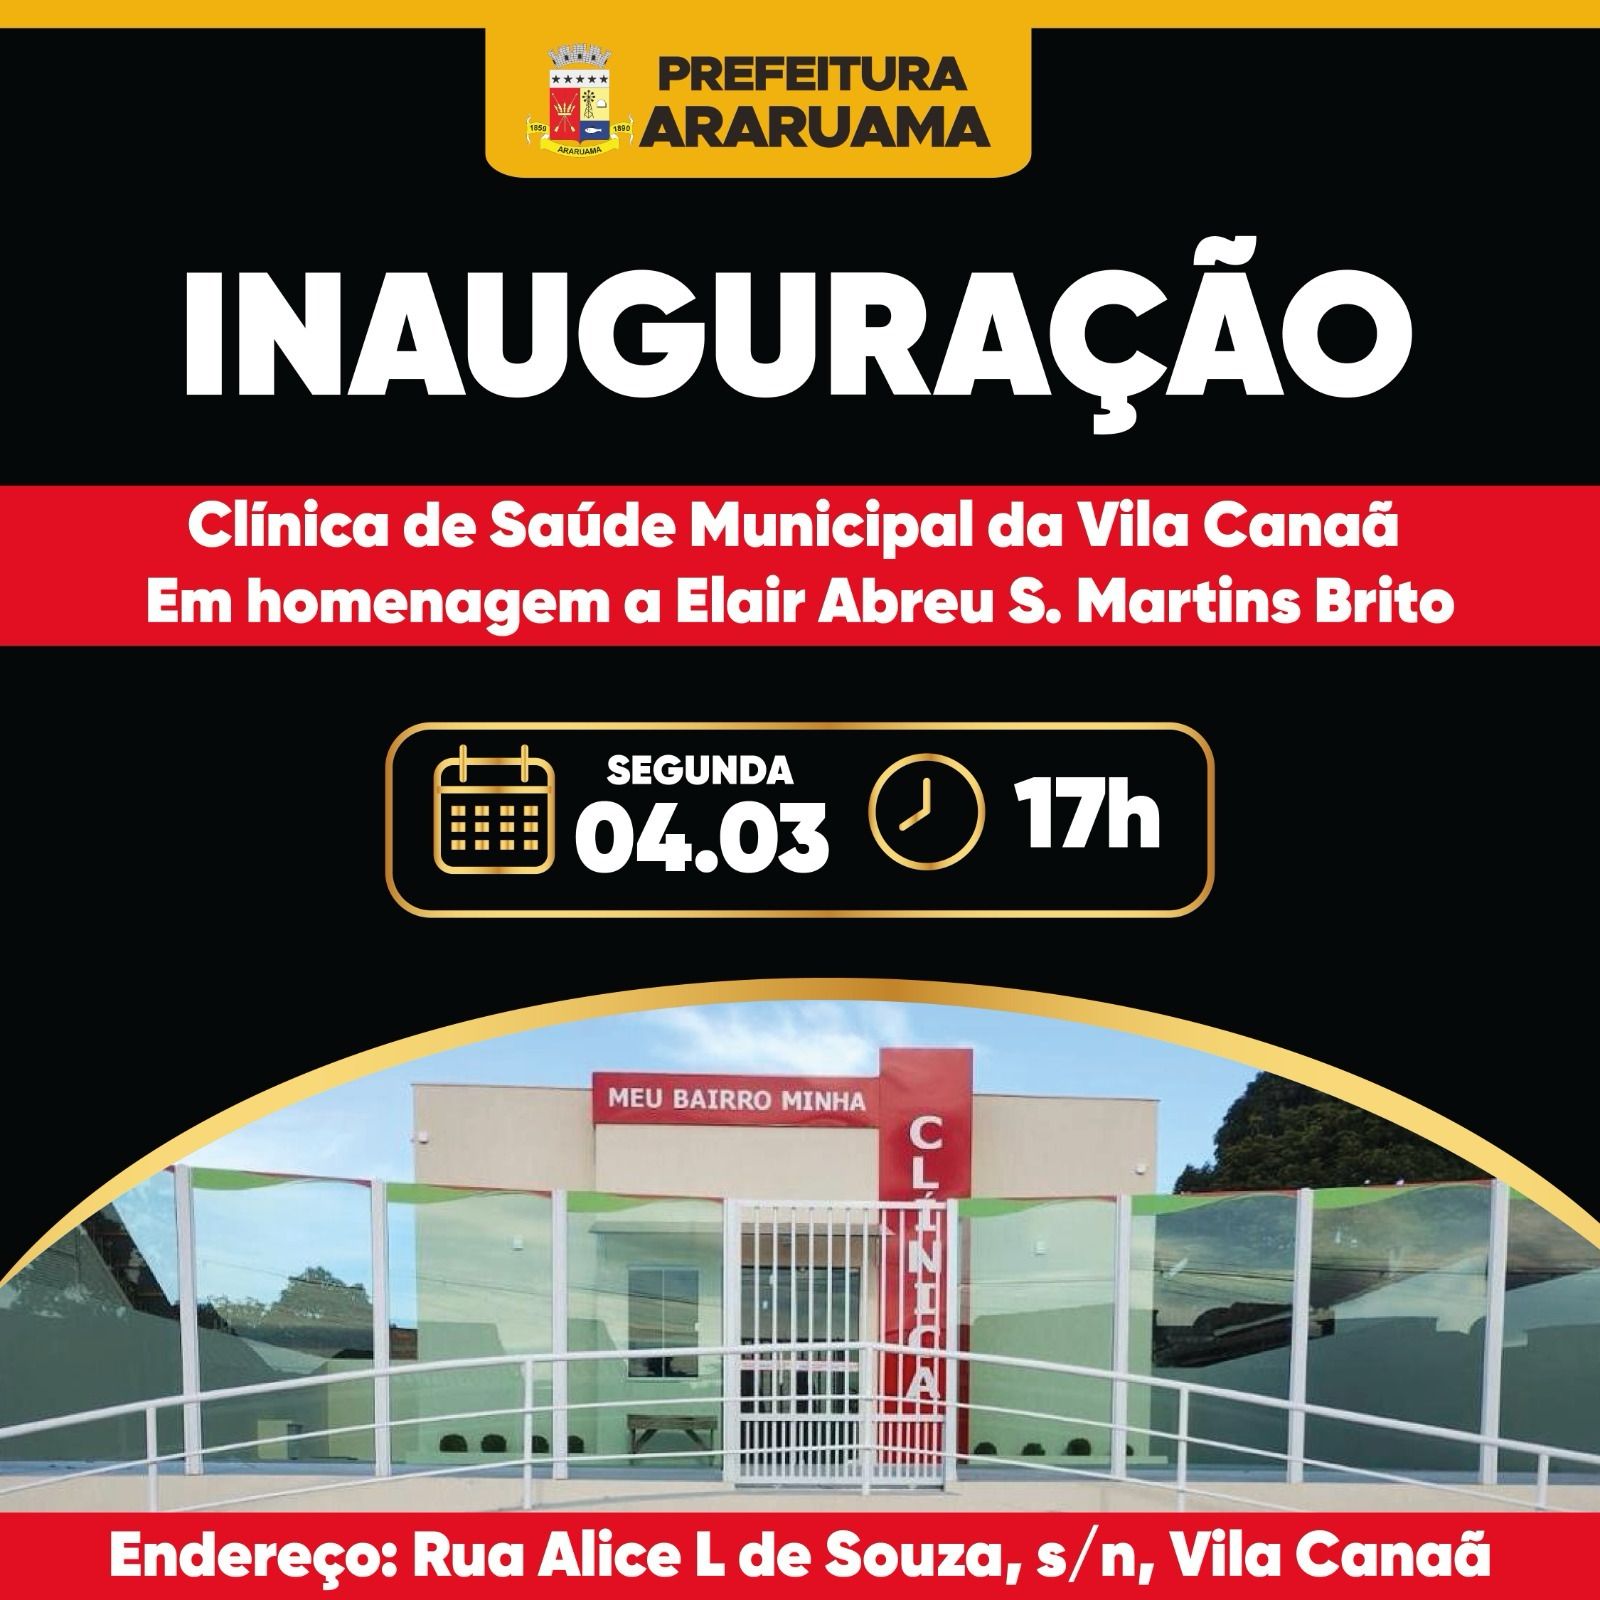 Prefeitura vai inaugurar a Clínica Municipal de Saúde da Vila Canaã, na próxima segunda-feira